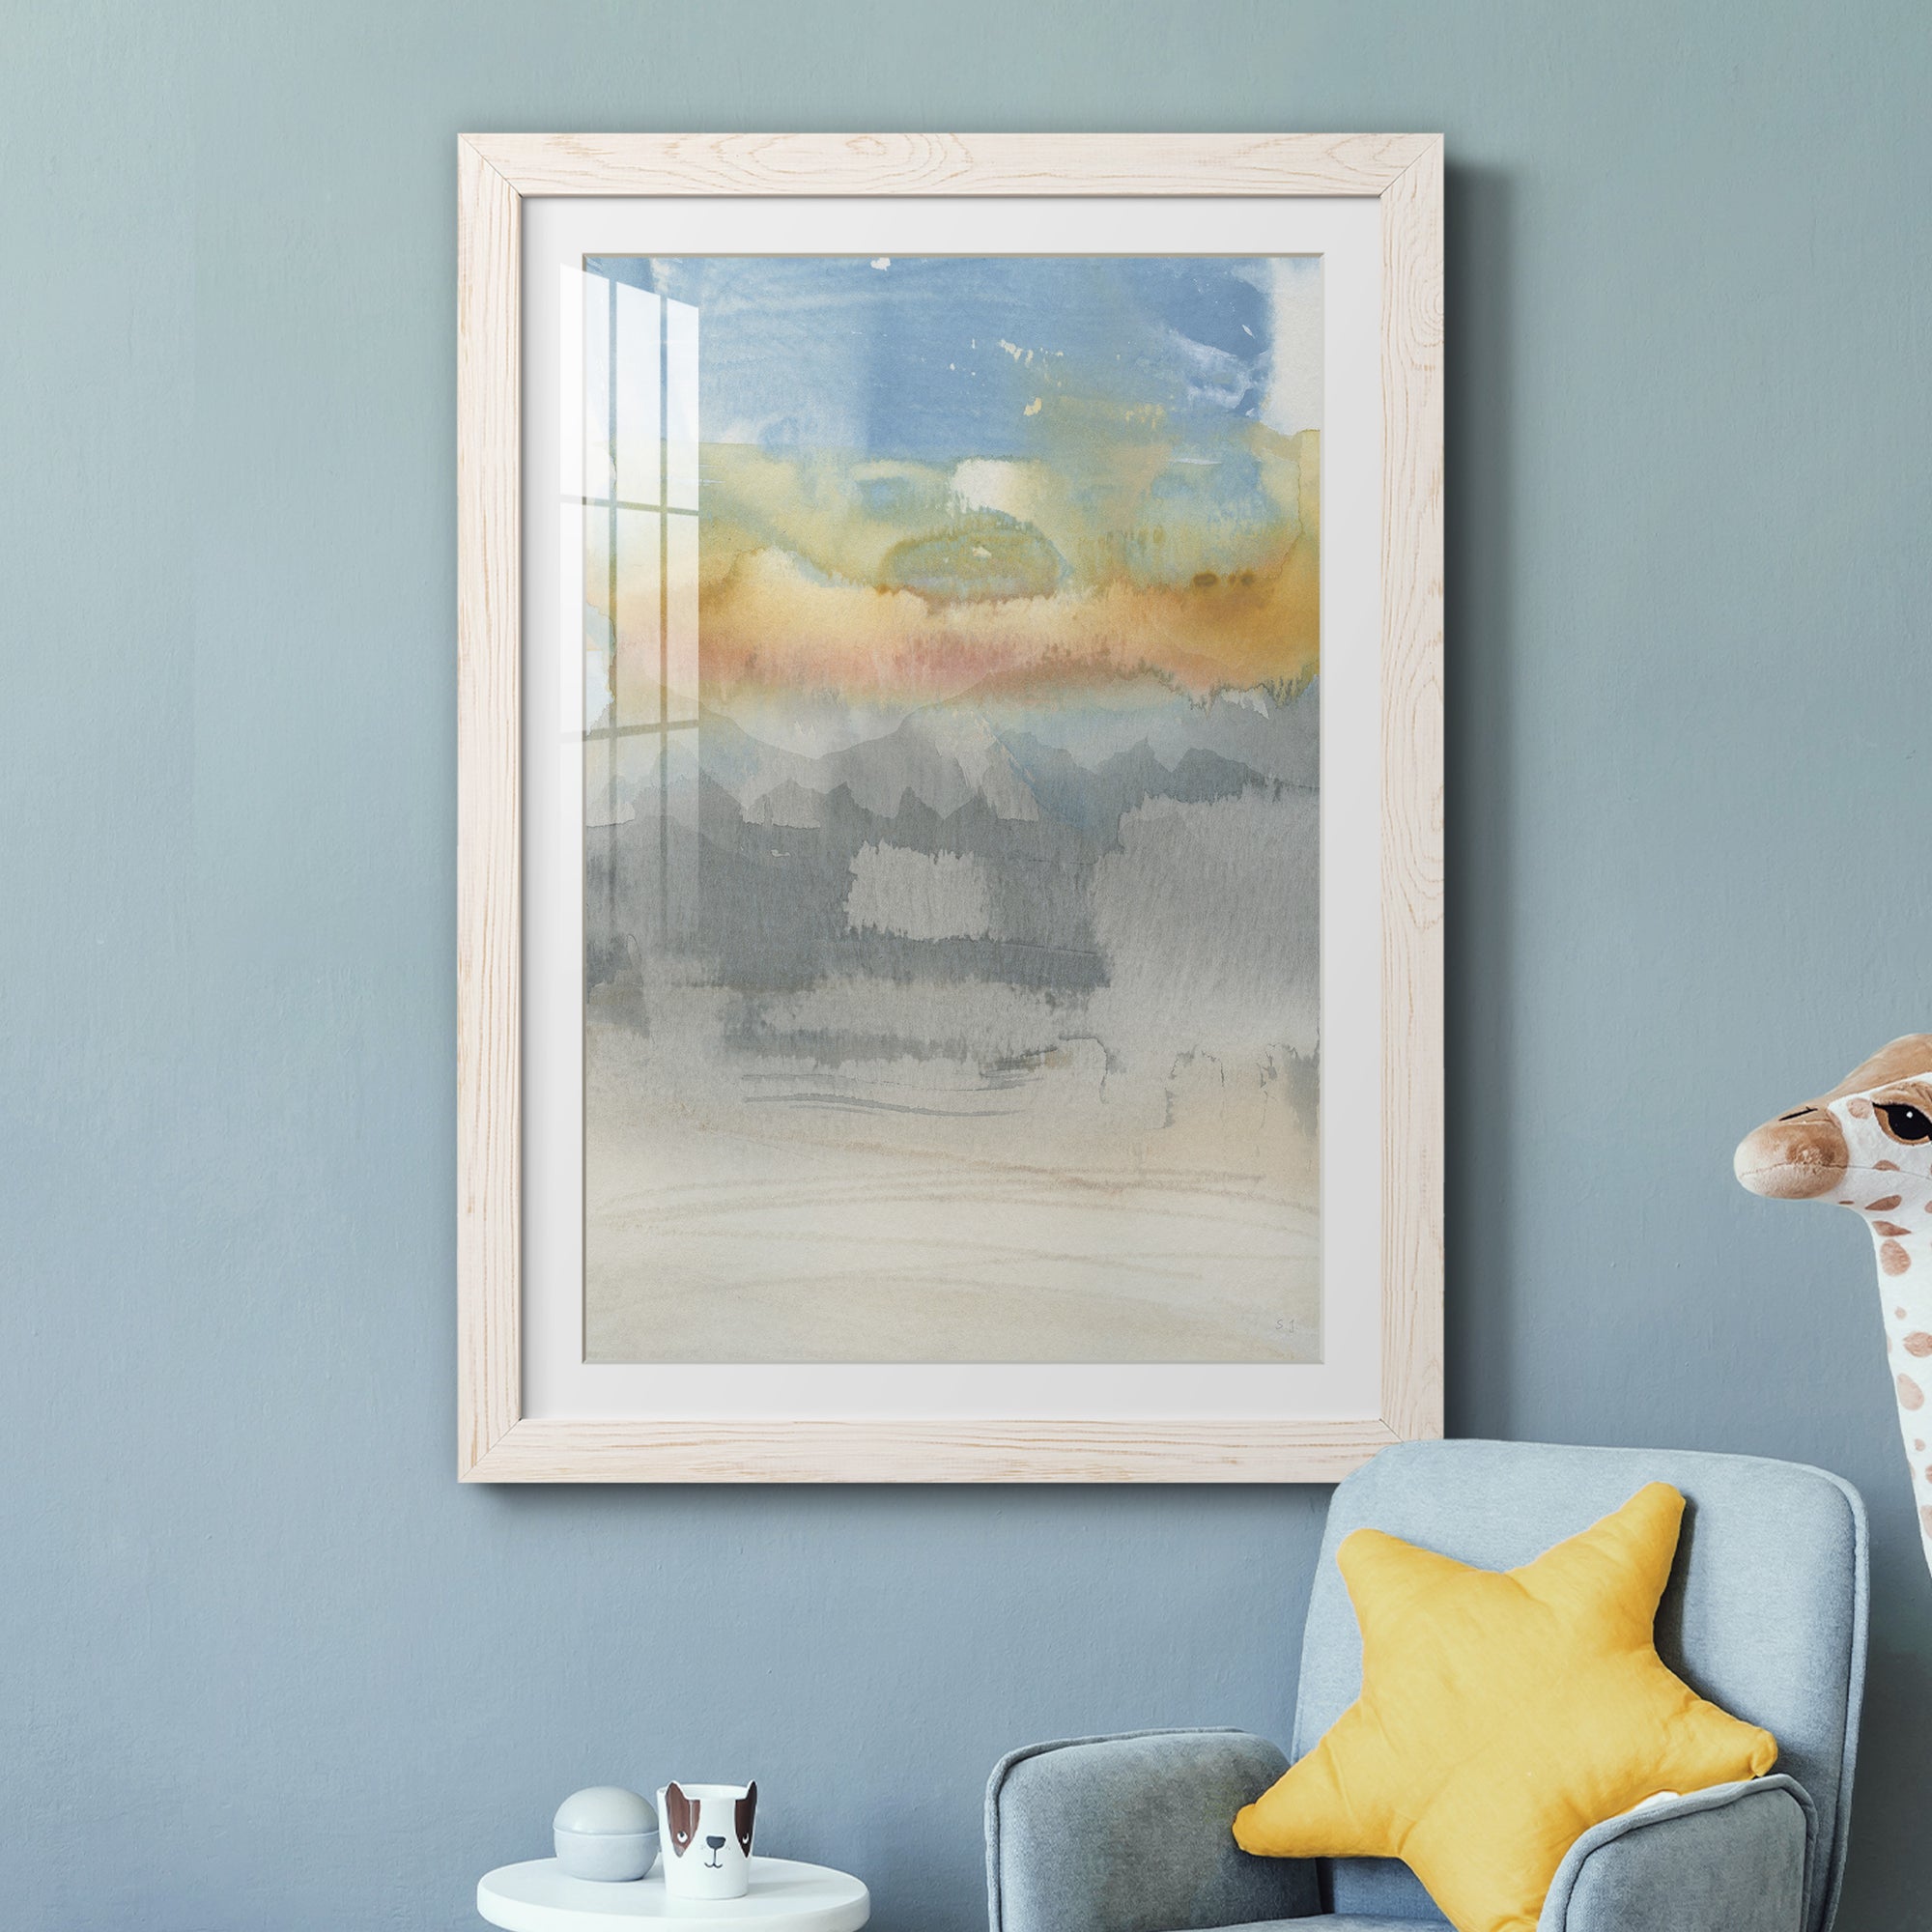 High Desert Sunset II - Premium Framed Print - Distressed Barnwood Frame - Ready to Hang